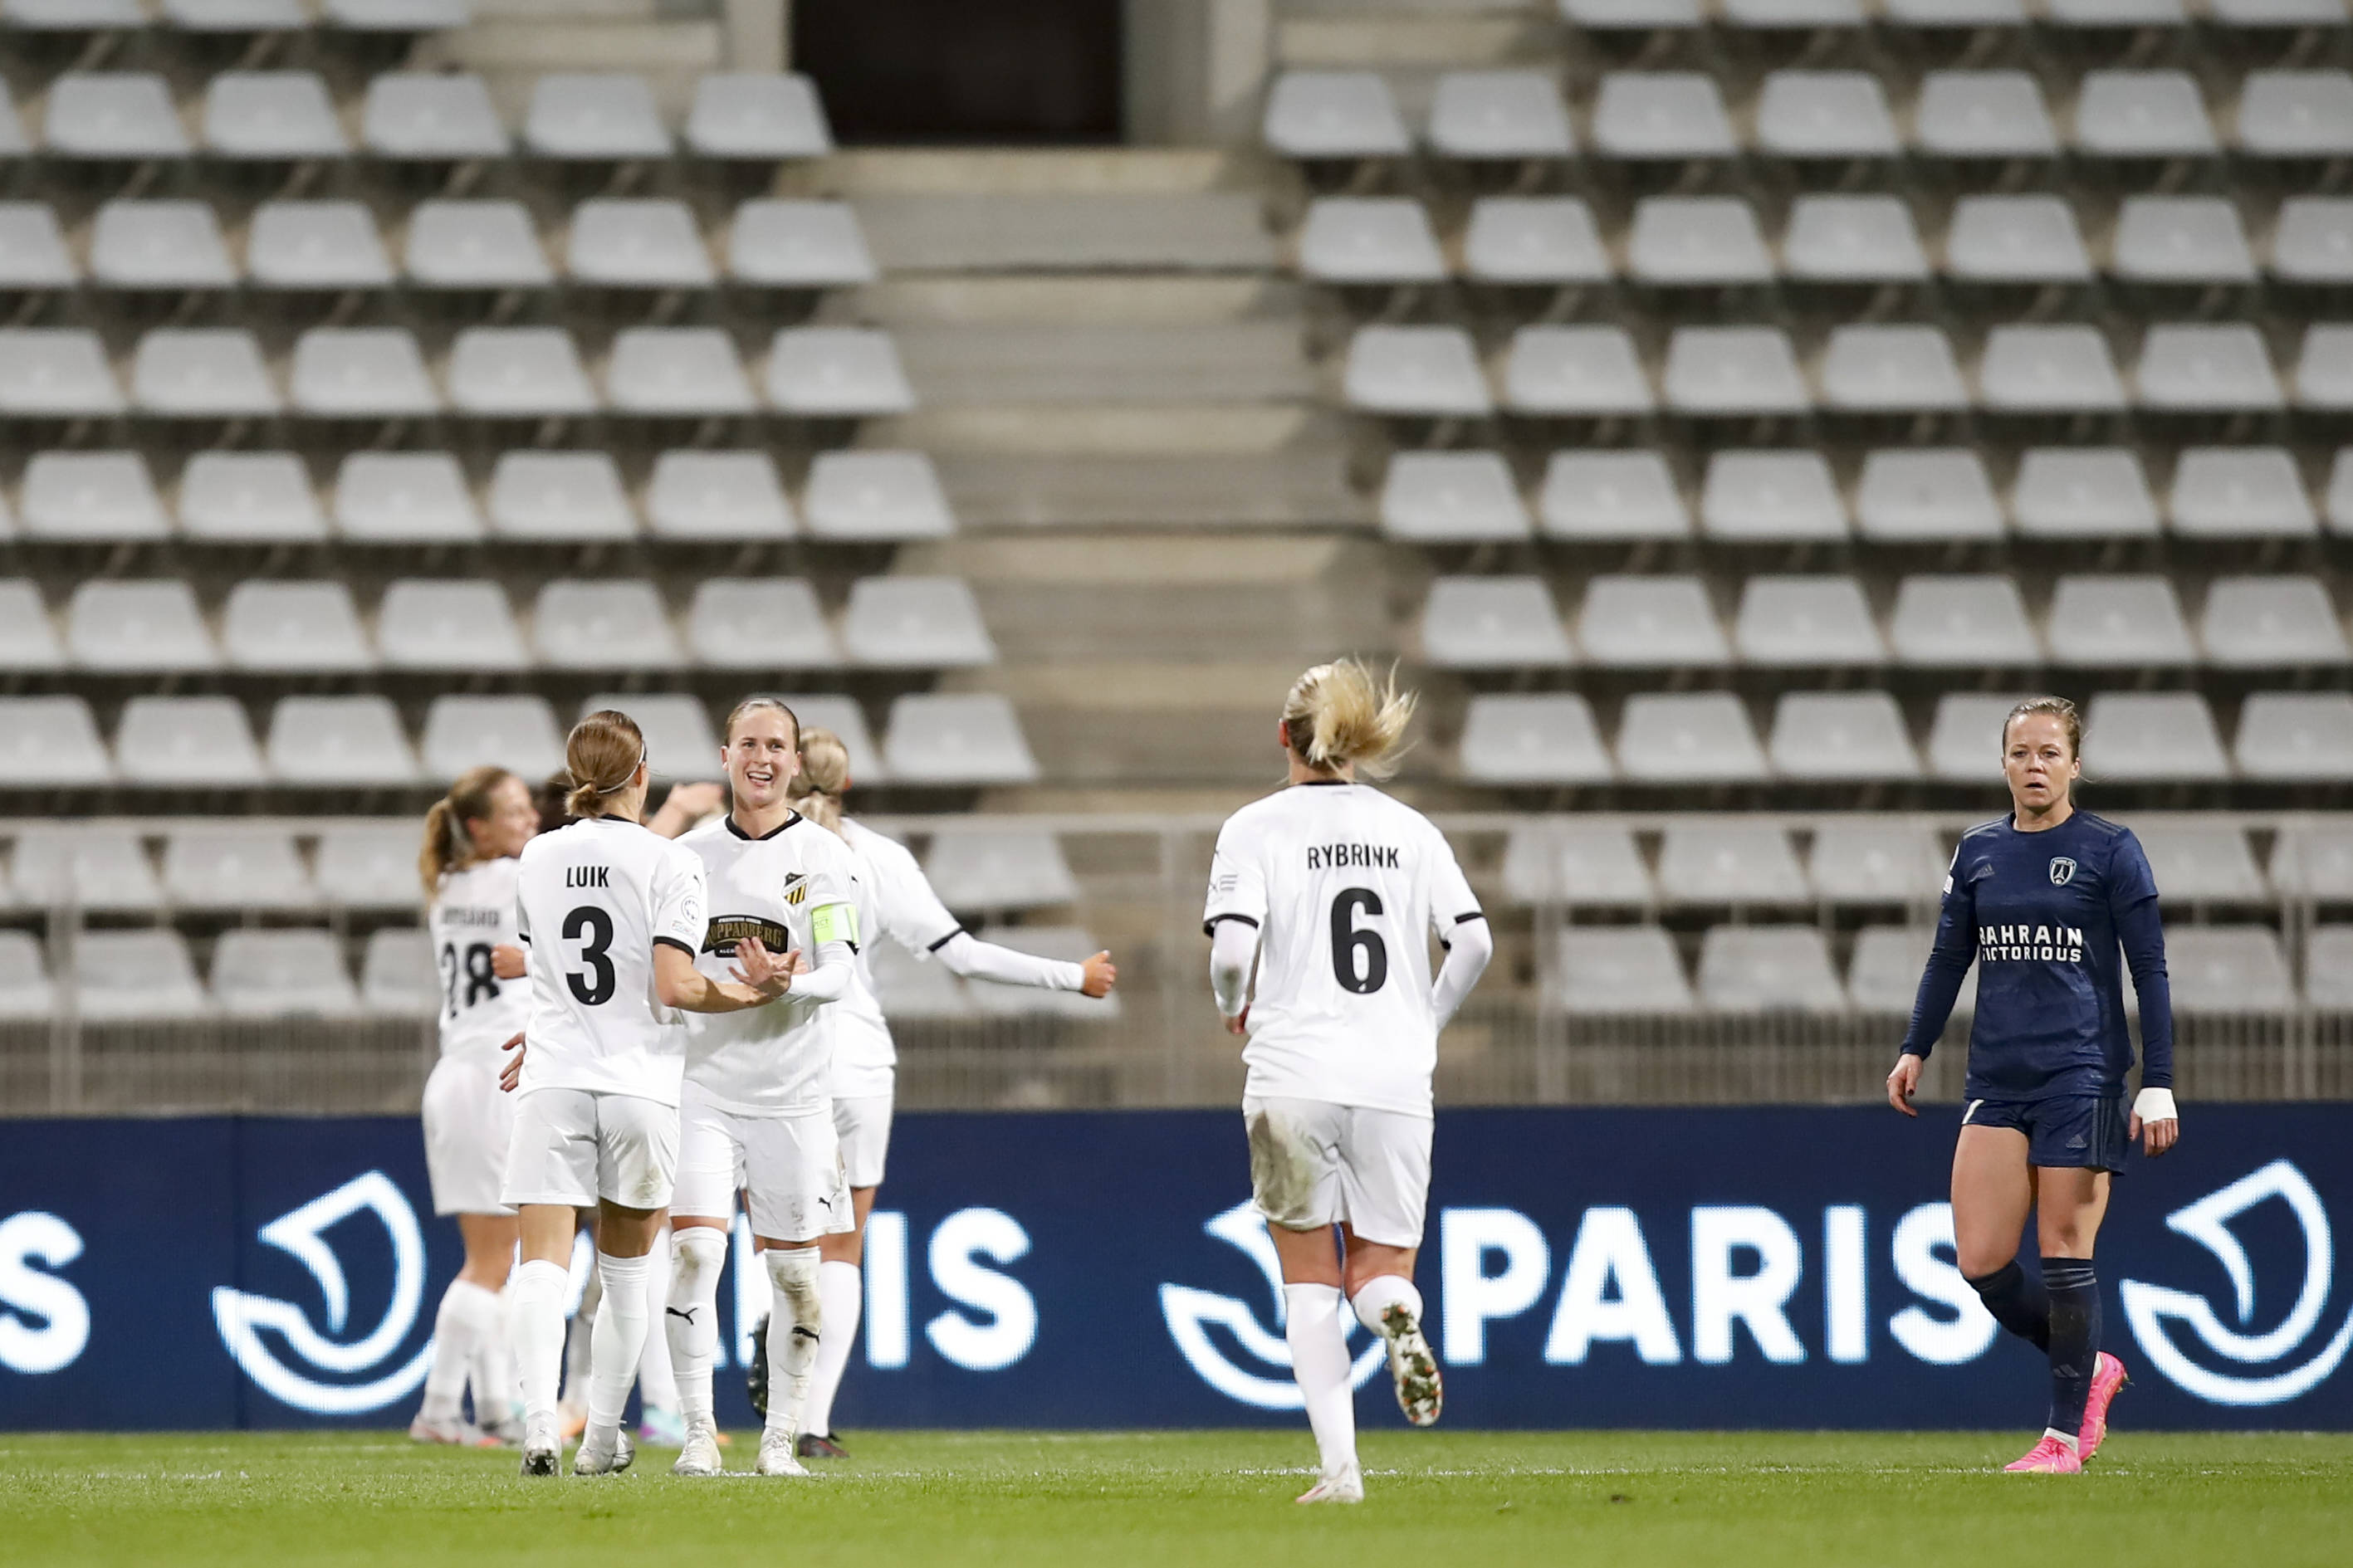 BK Häcken celebrate a goal against Paris FC during the UEFA Women's Champions League group stage. (Photo: Imago)